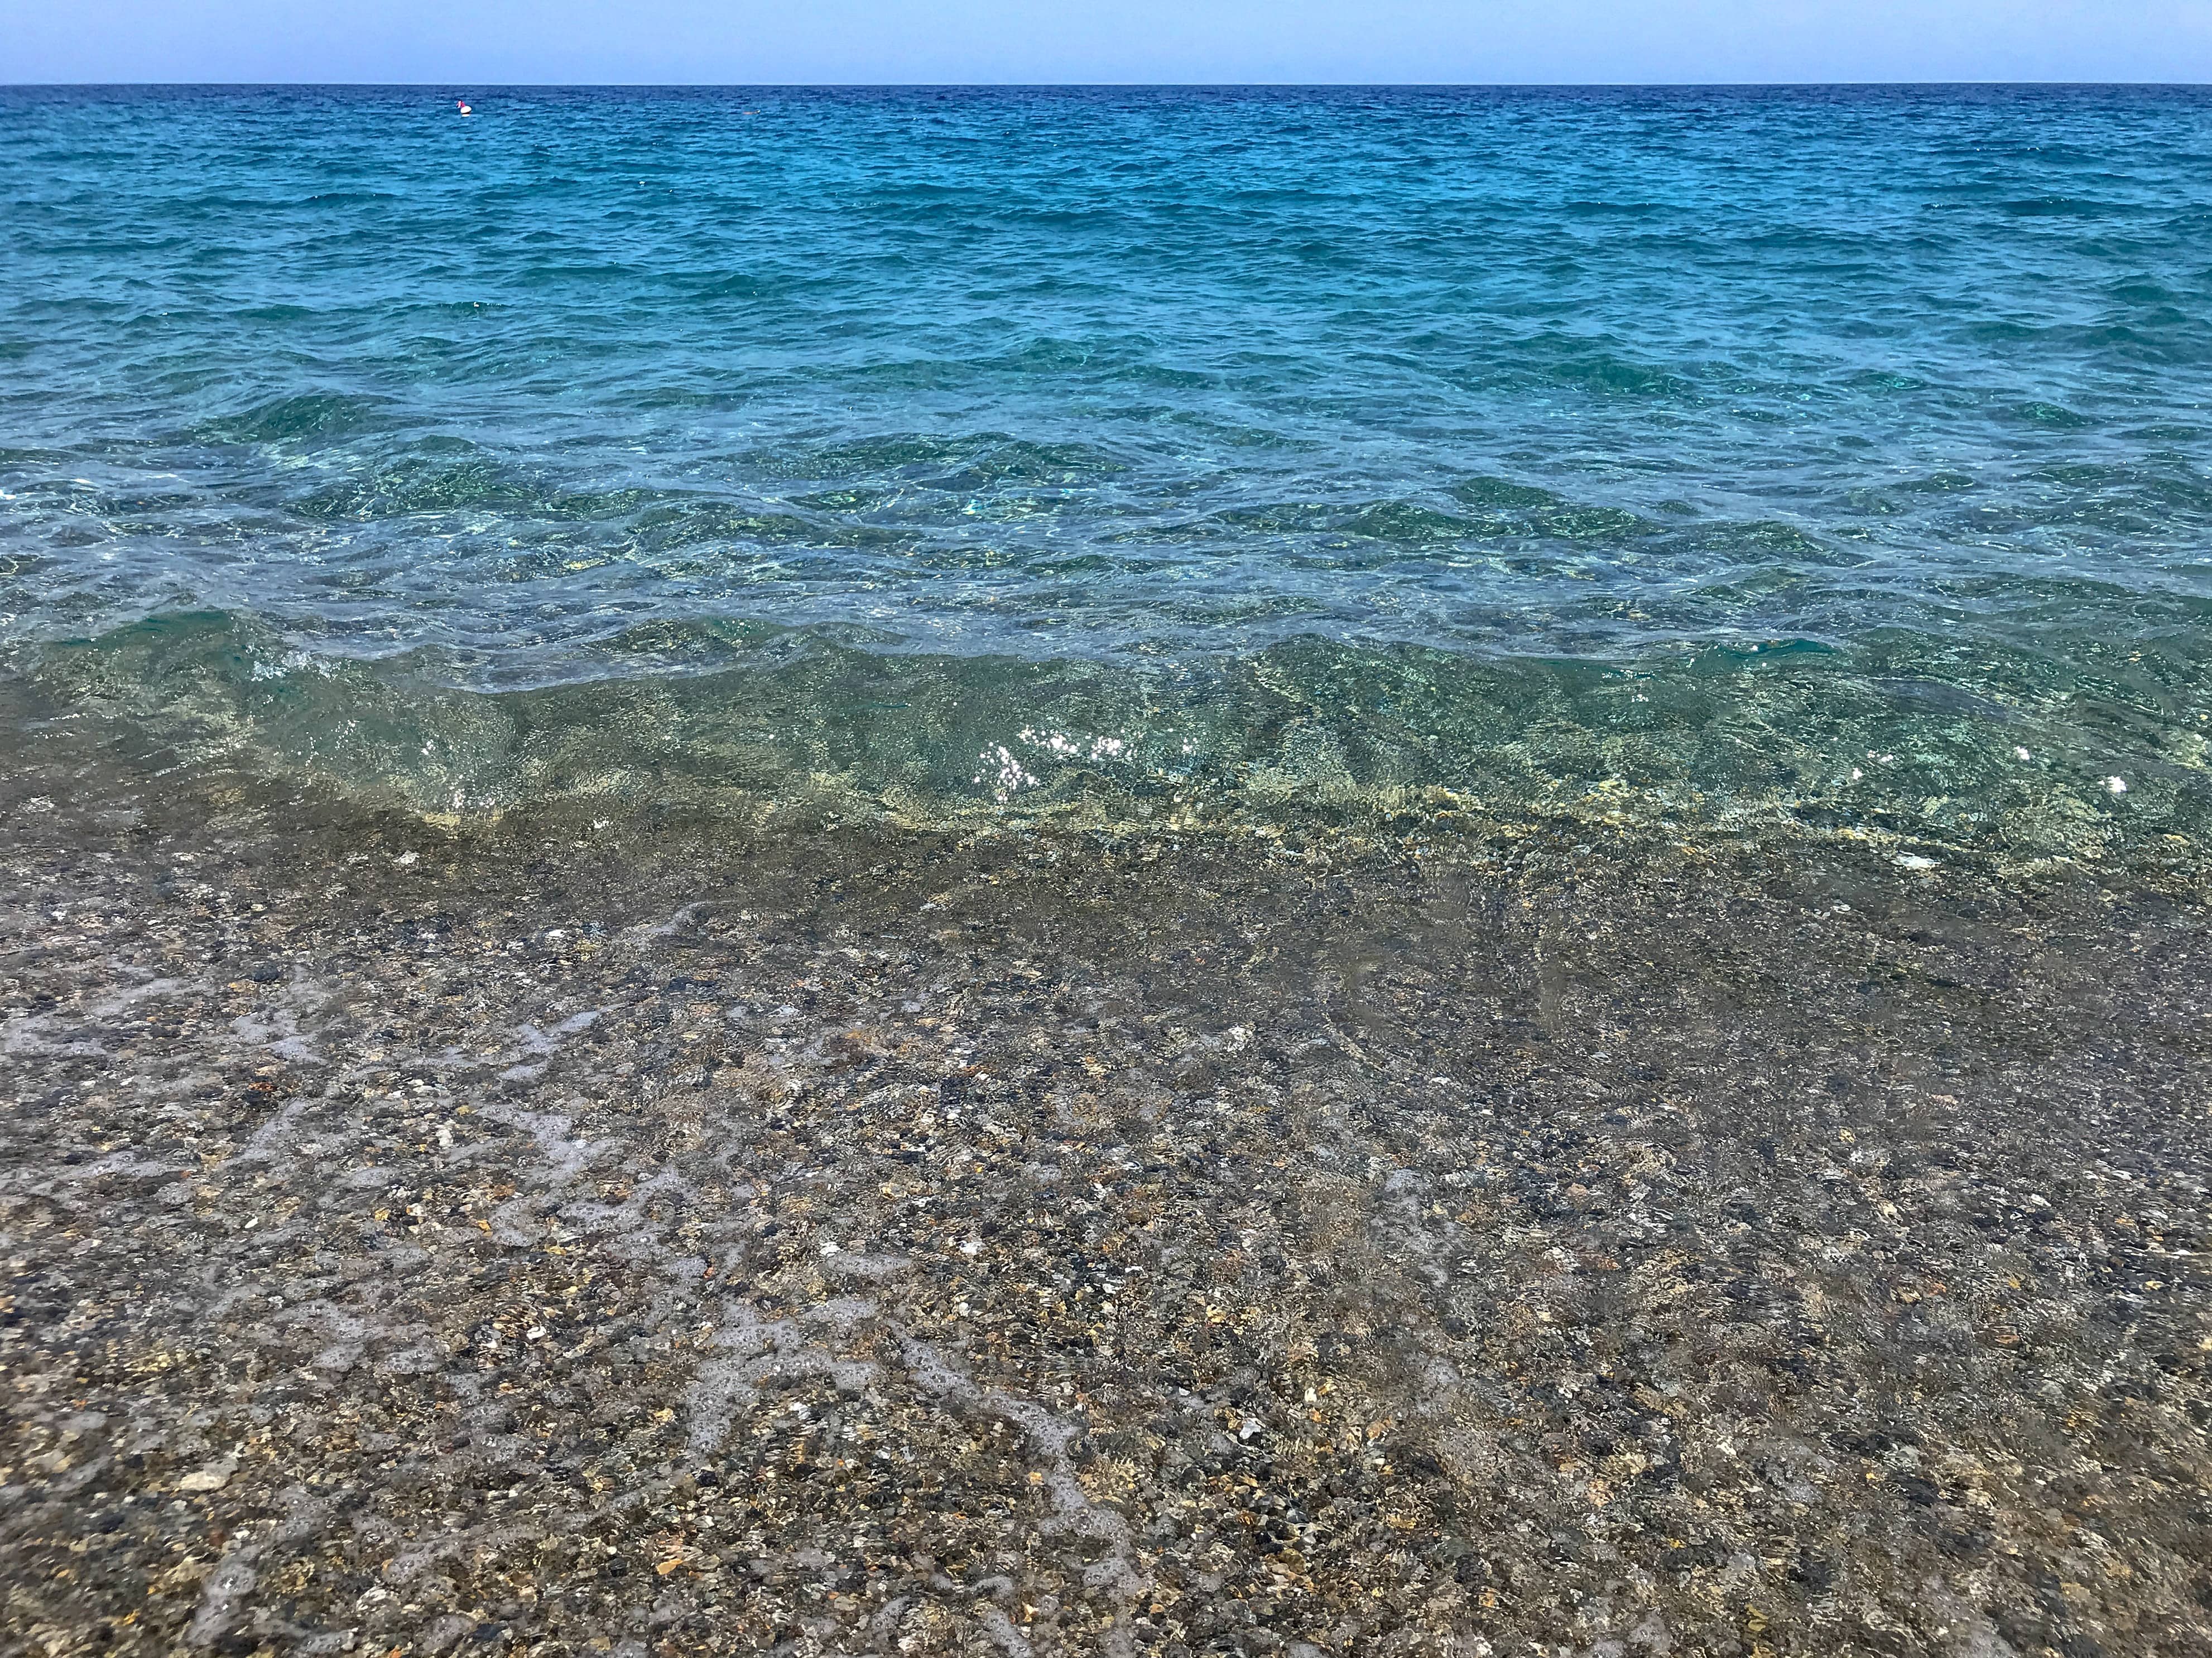 Cosa vedere nella costa jonica della Calabria